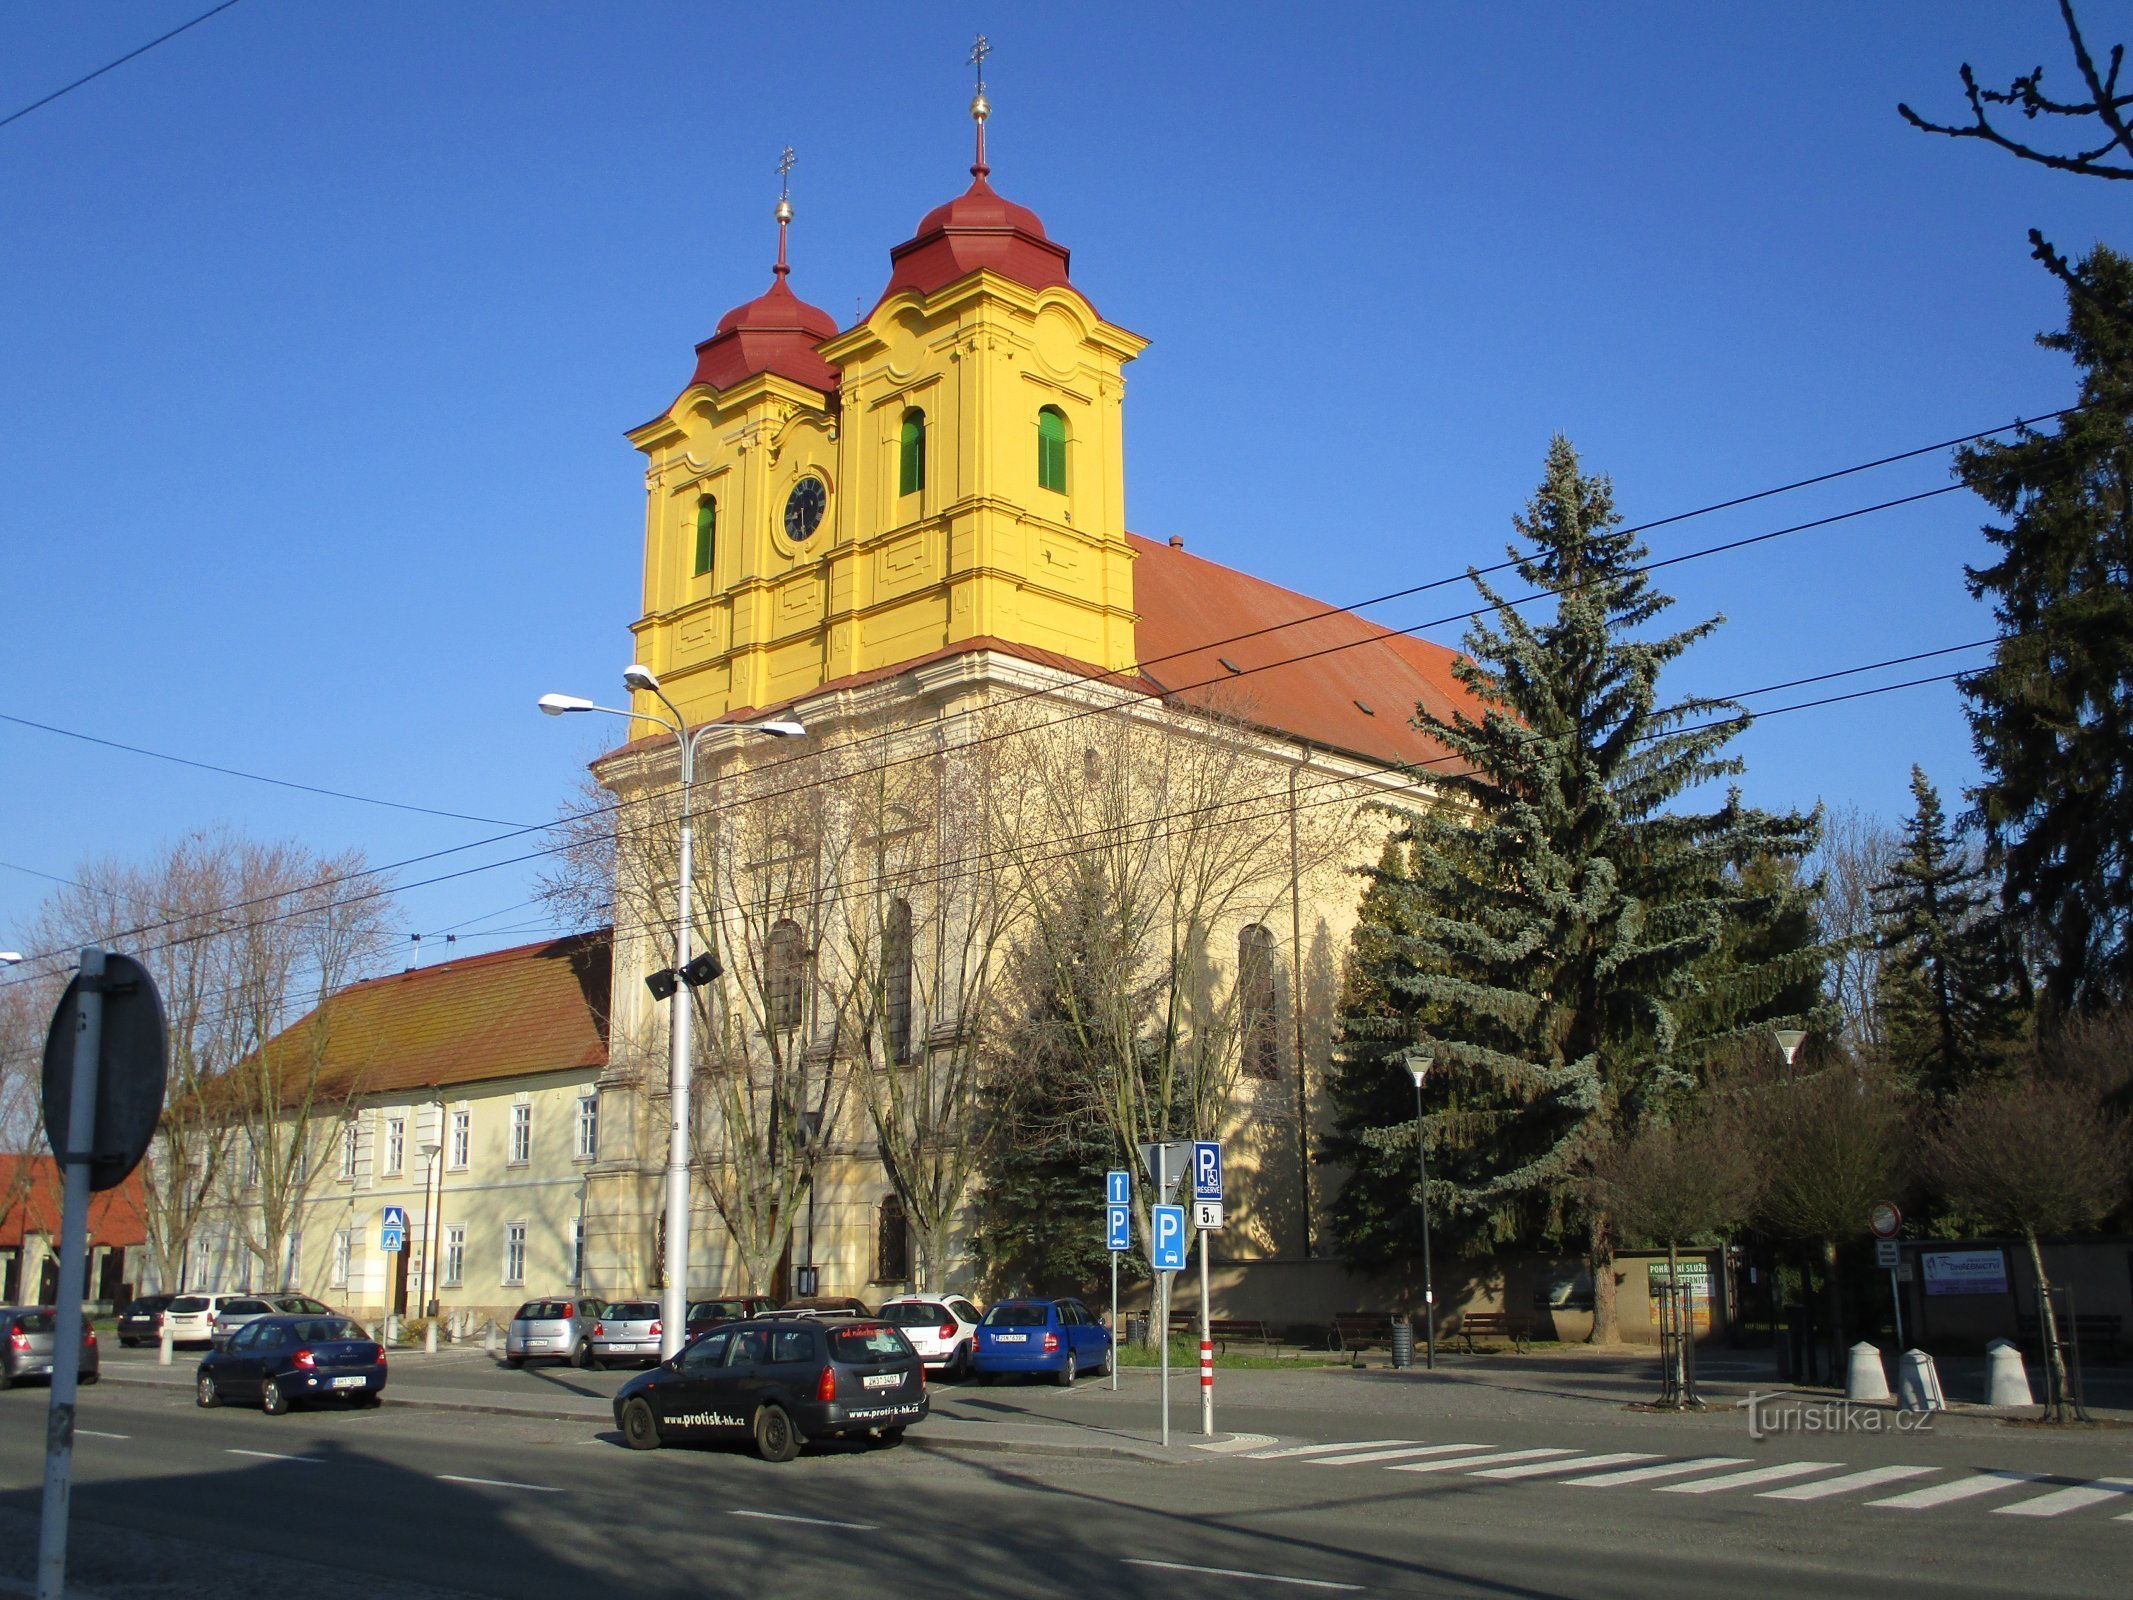 Kostel sv. Anny (Hradec Králové, 5.4.2020)